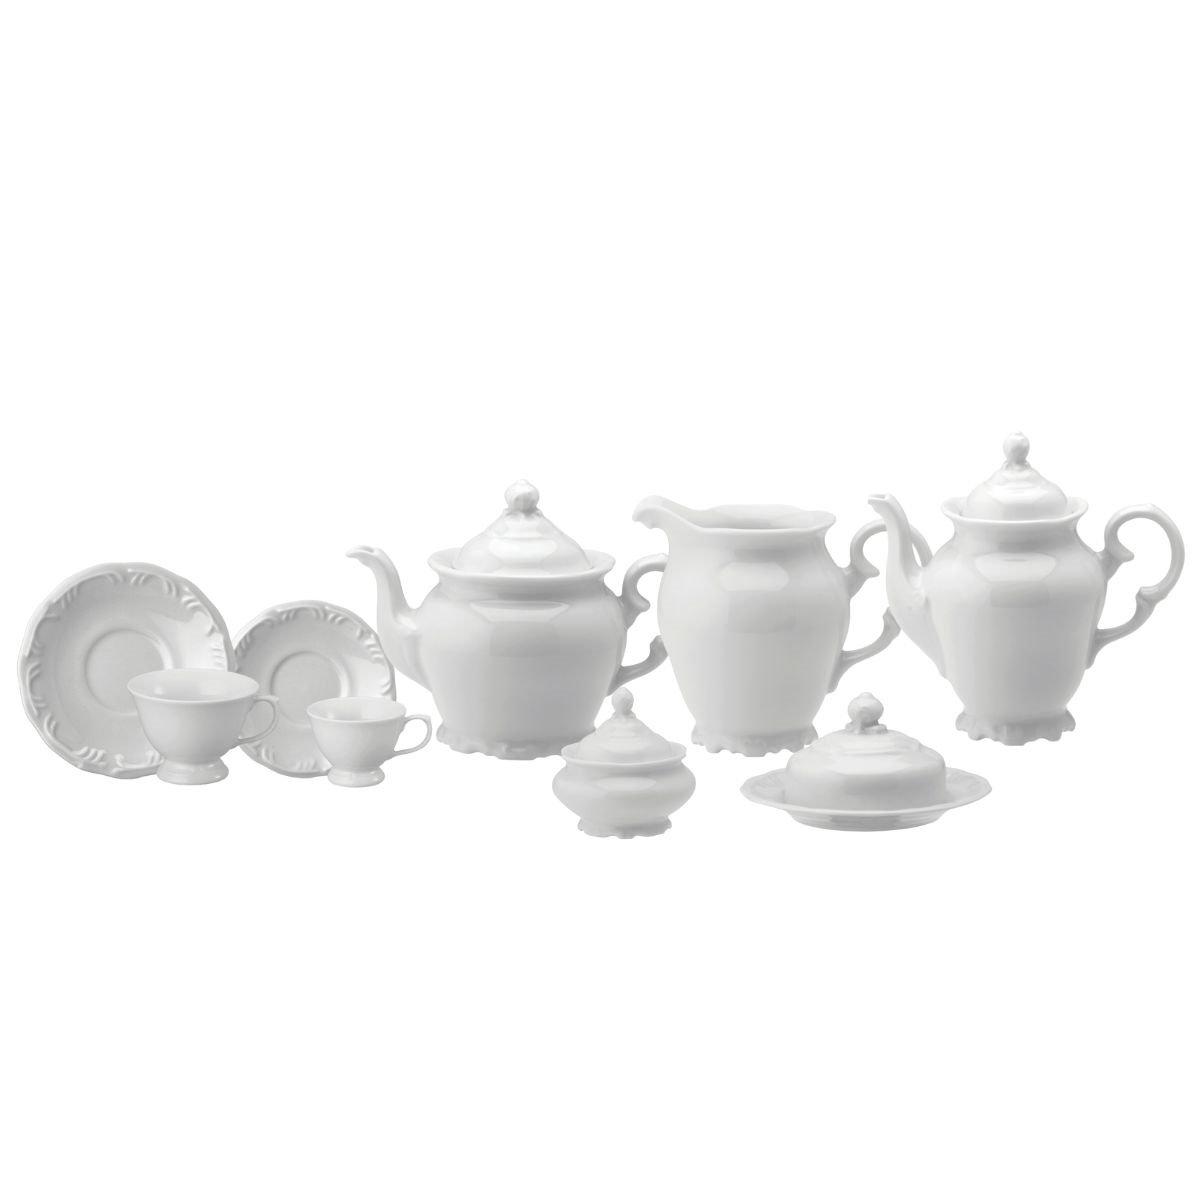 Aparelho de Chá e Café Porcelana Schmidt 53 peças - Mod. Pomerode 114